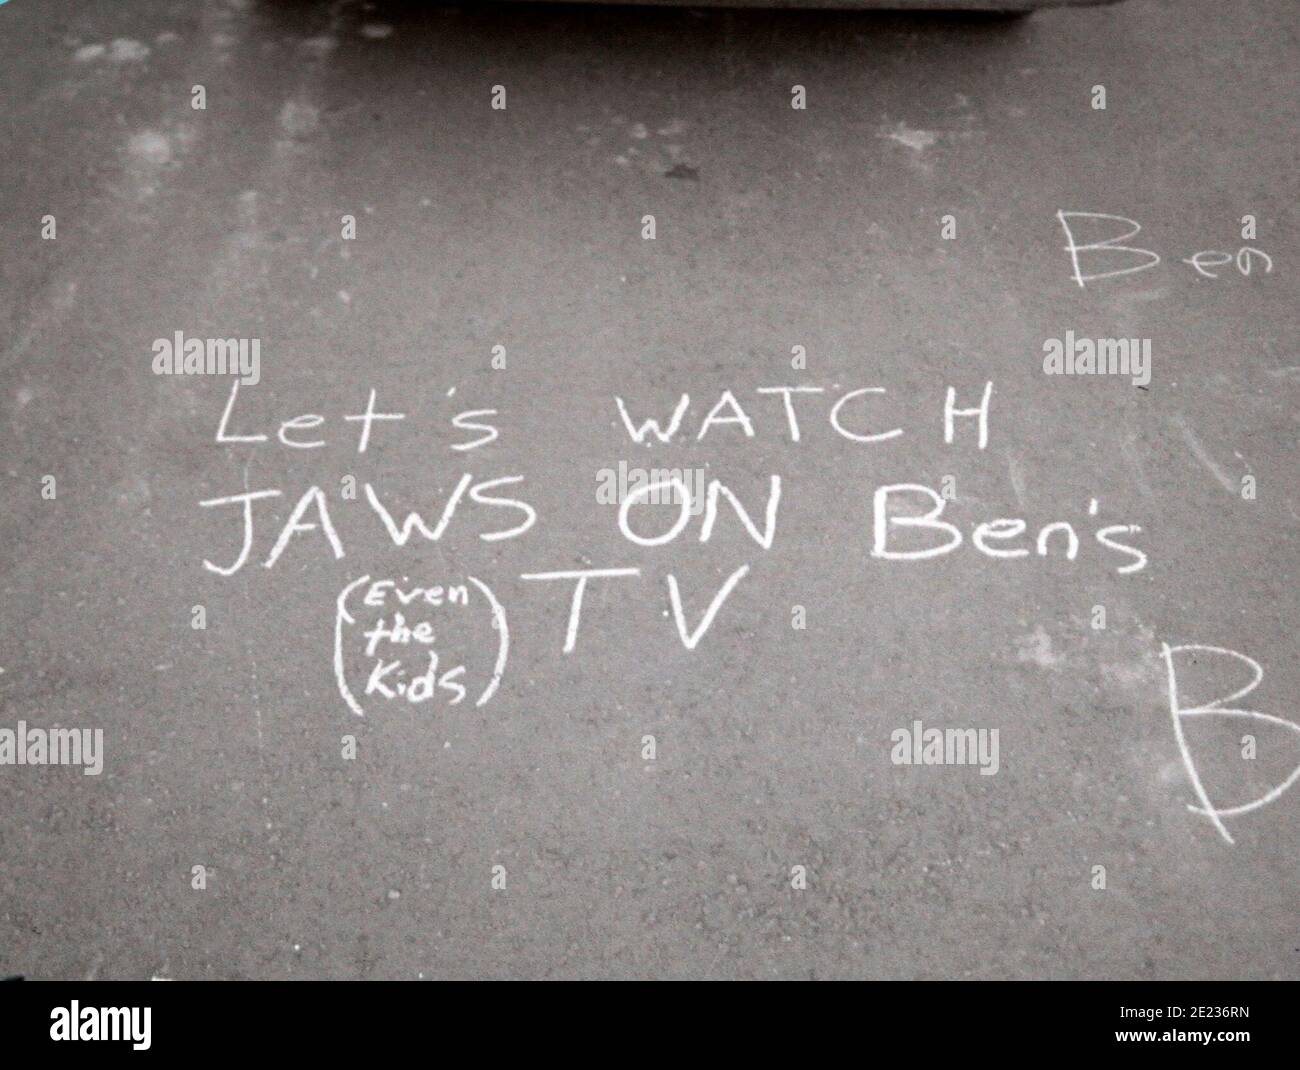 Graffiti bizarres sur le terrain - regardons les Jaws sur la télévision de Ben, même les enfants - vers la fin des années 1980 Banque D'Images